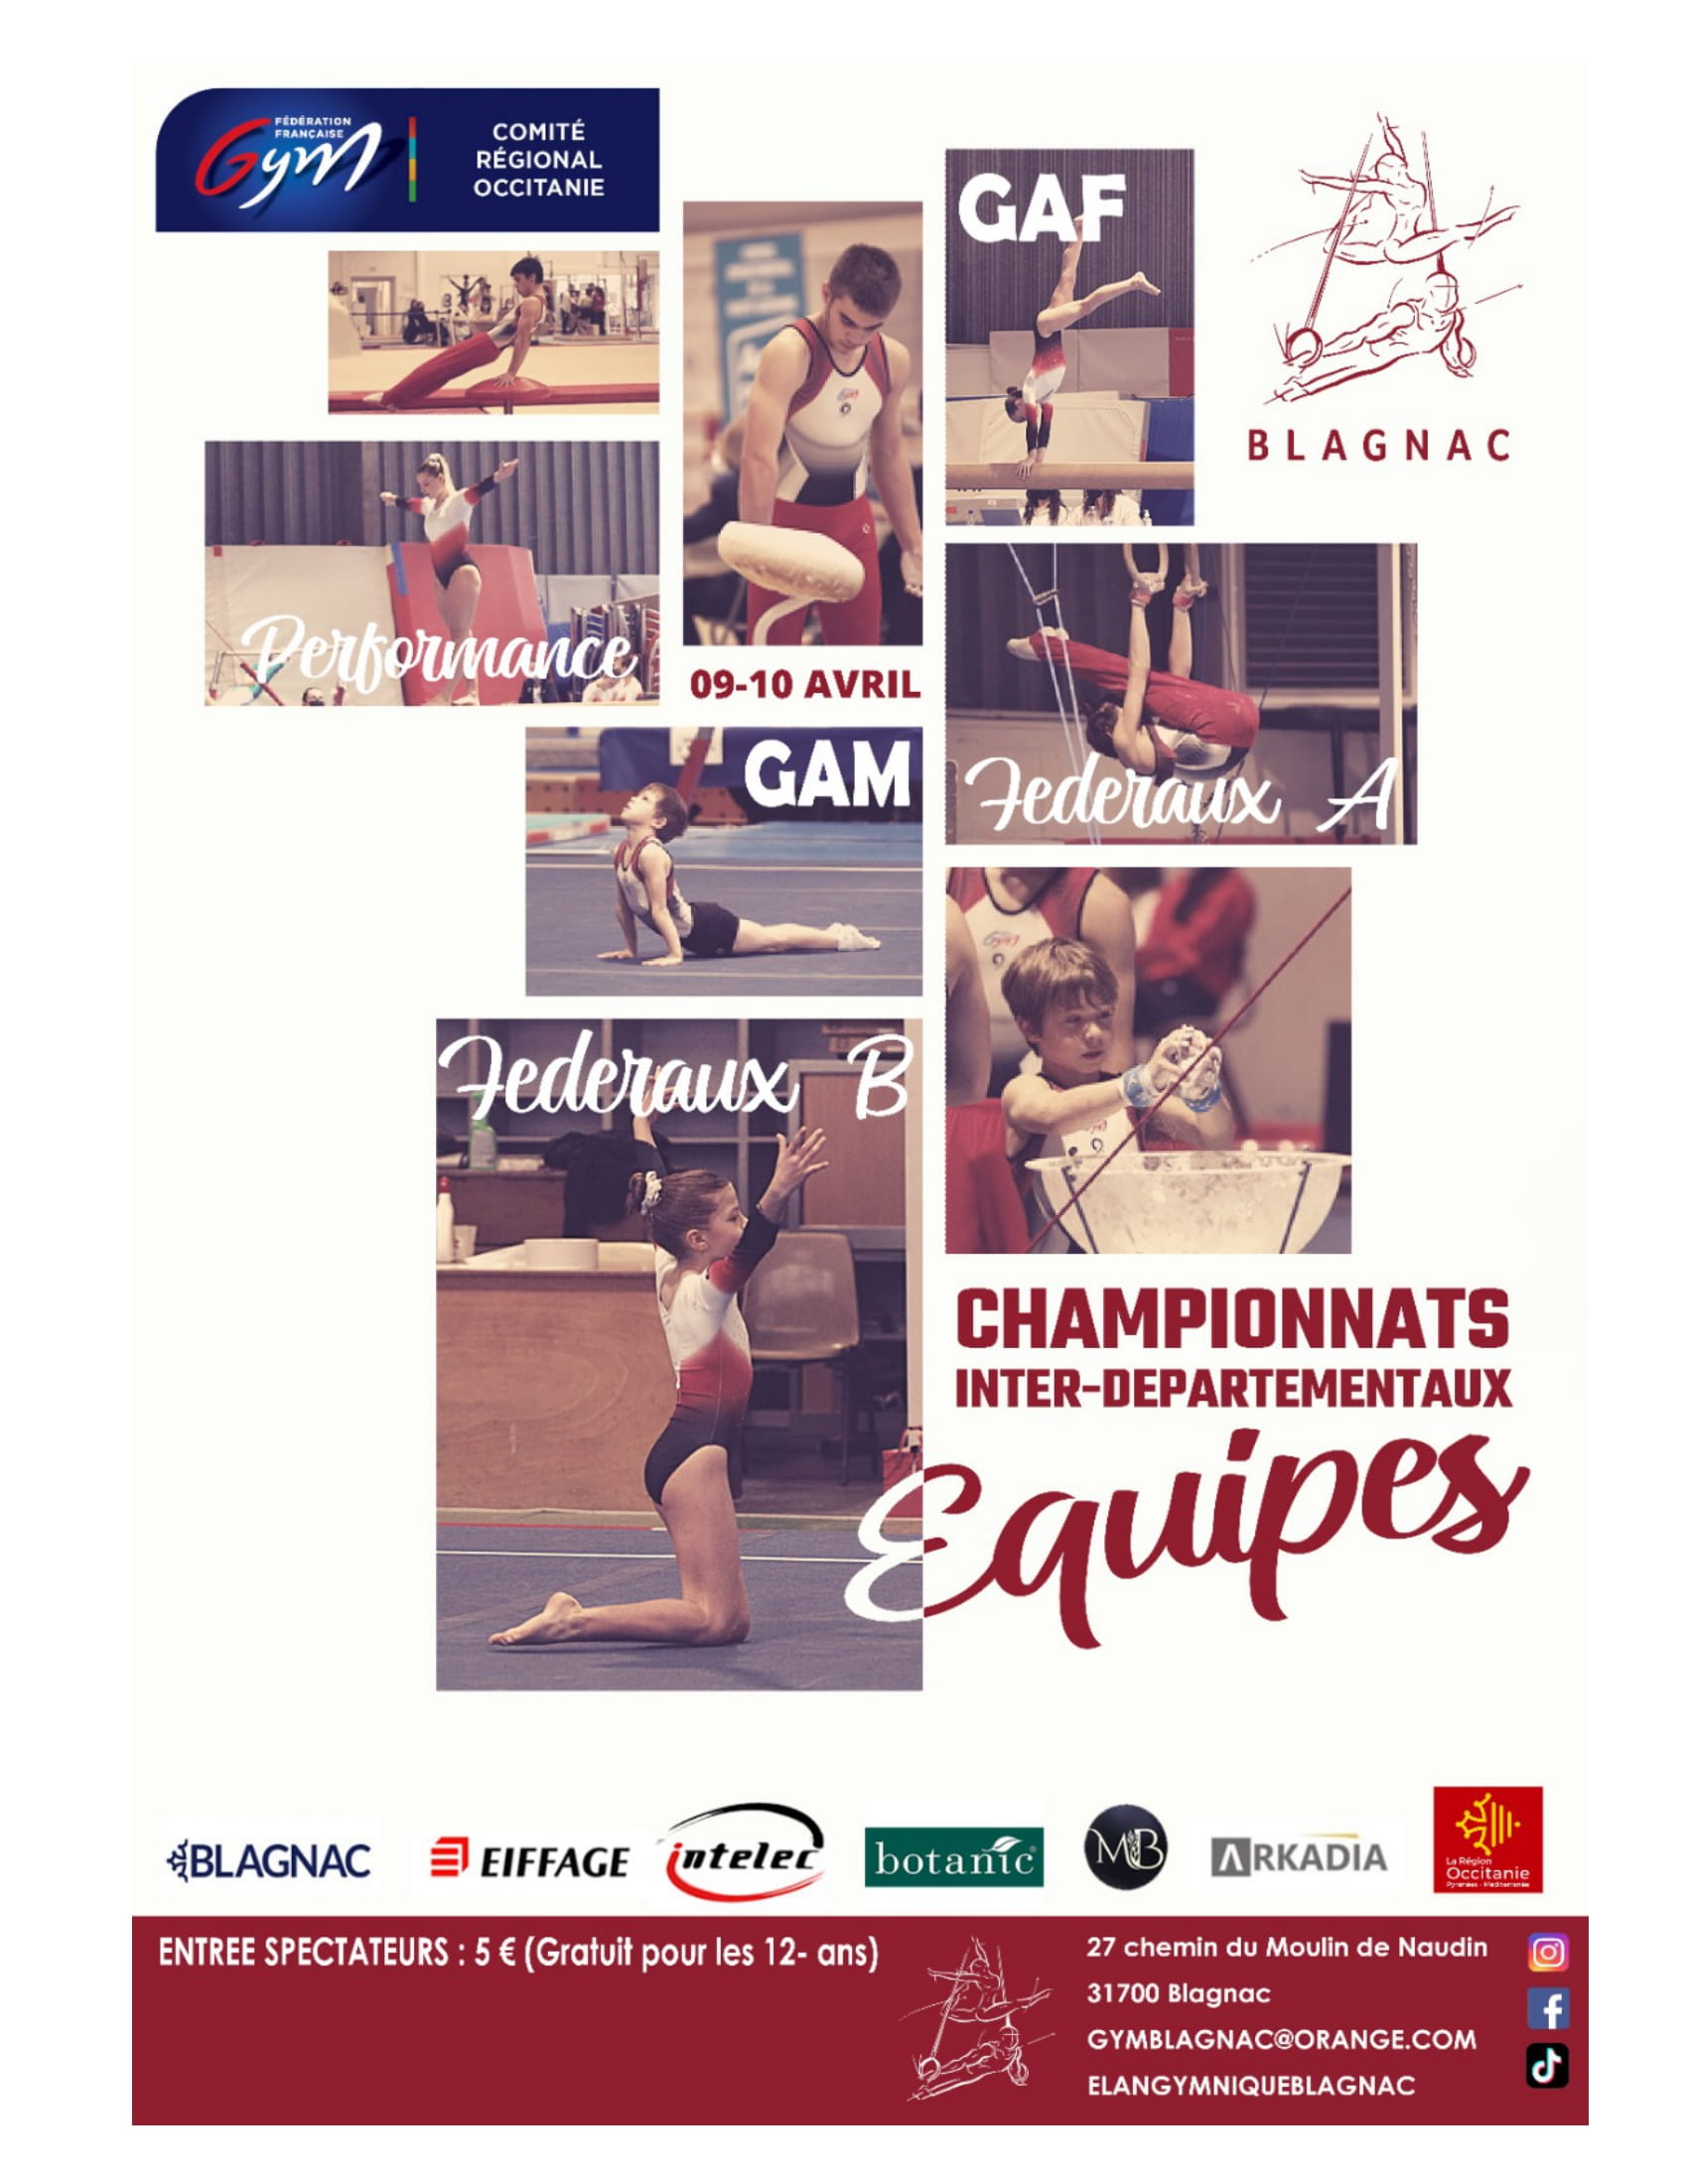 GAF - Blagnac - 9&10 avril - Championnat inter-départementaux par équipe